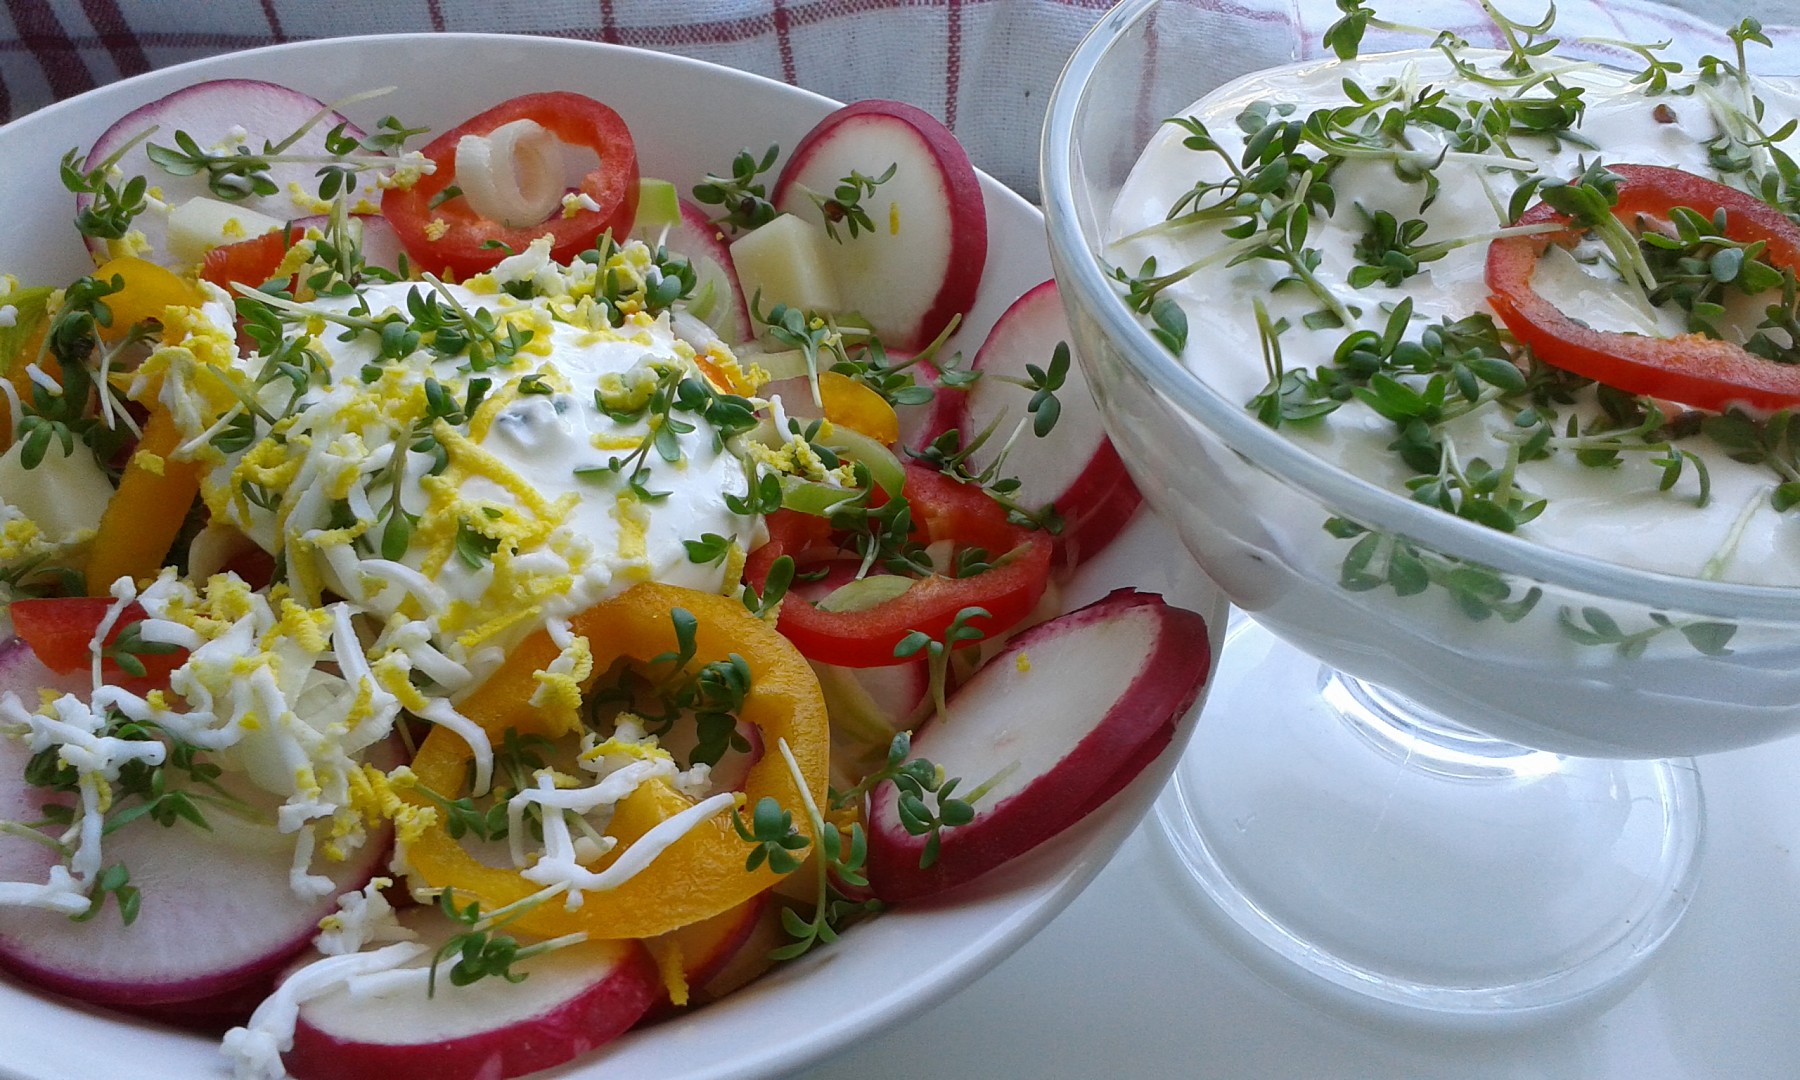 Zeleninový salát se smetanou a řeřichou.